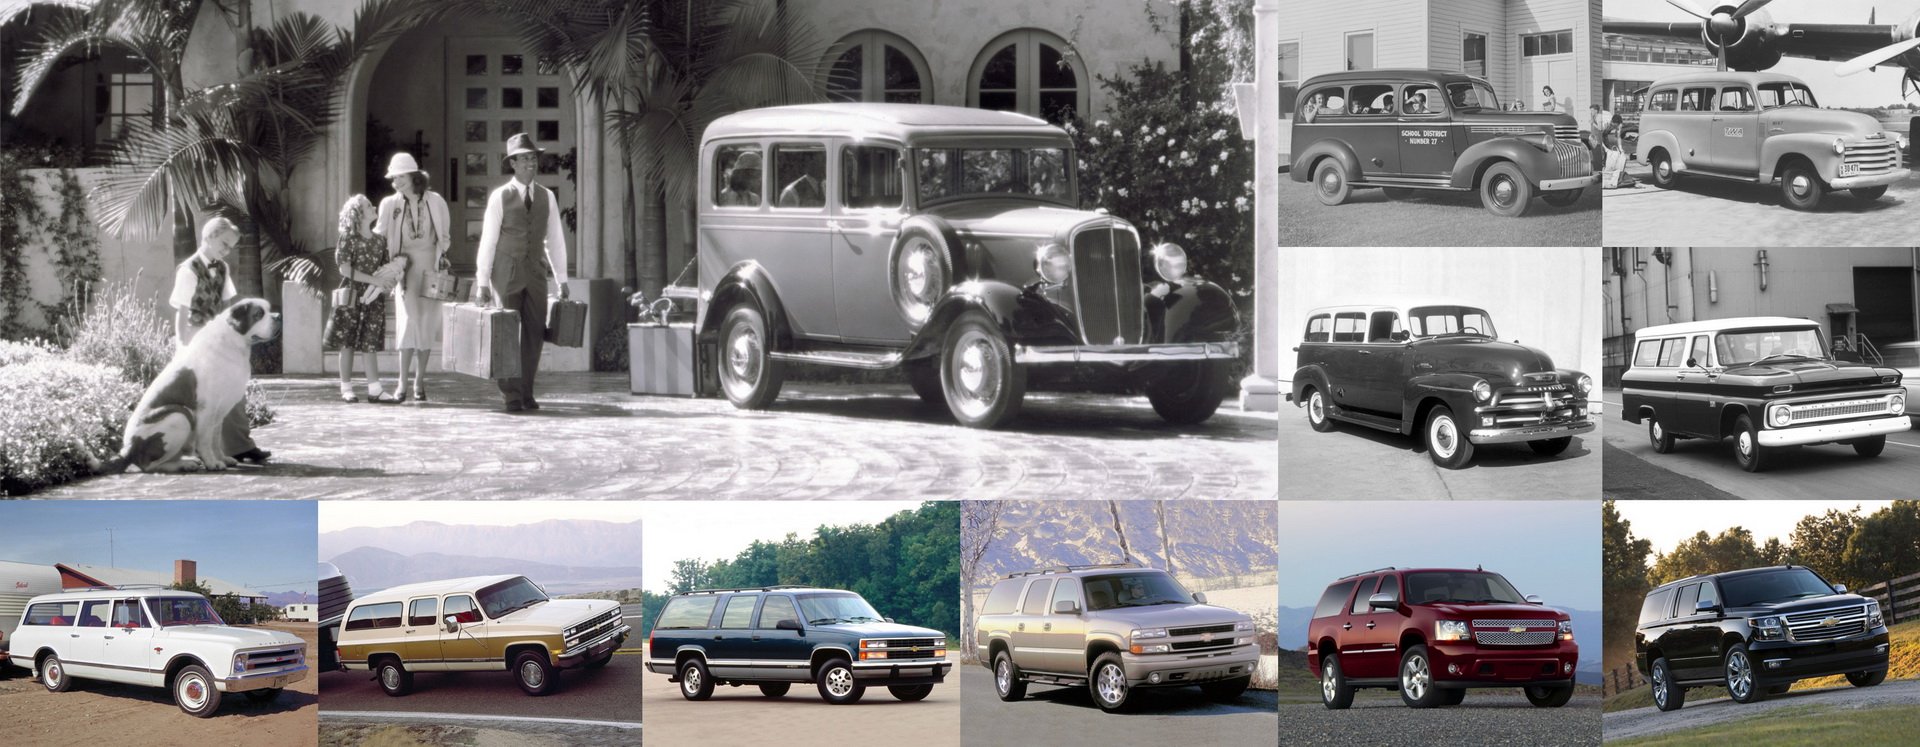 شيفروليه سوبربان تحتفل بمرور 85 عاماً وكونها أقدم موديل في تاريخ السيارات 27